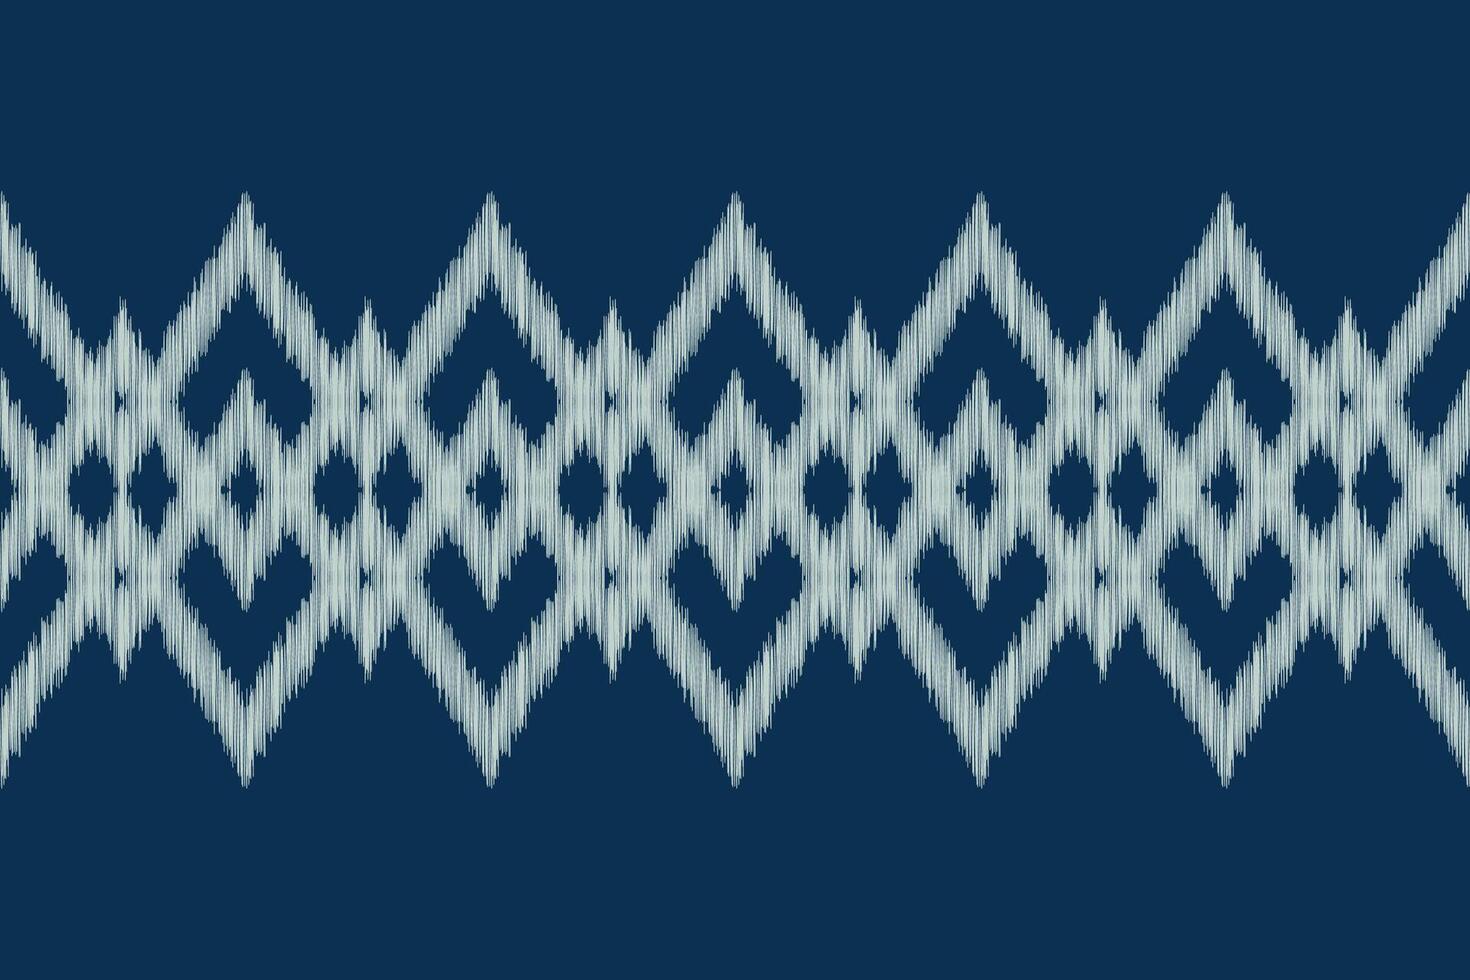 traditioneel etnisch ikat motief kleding stof patroon meetkundig stijl.afrikaans ikat borduurwerk etnisch oosters patroon blauw achtergrond behang. abstract, illustratie.textuur,frame,decoratie. vector